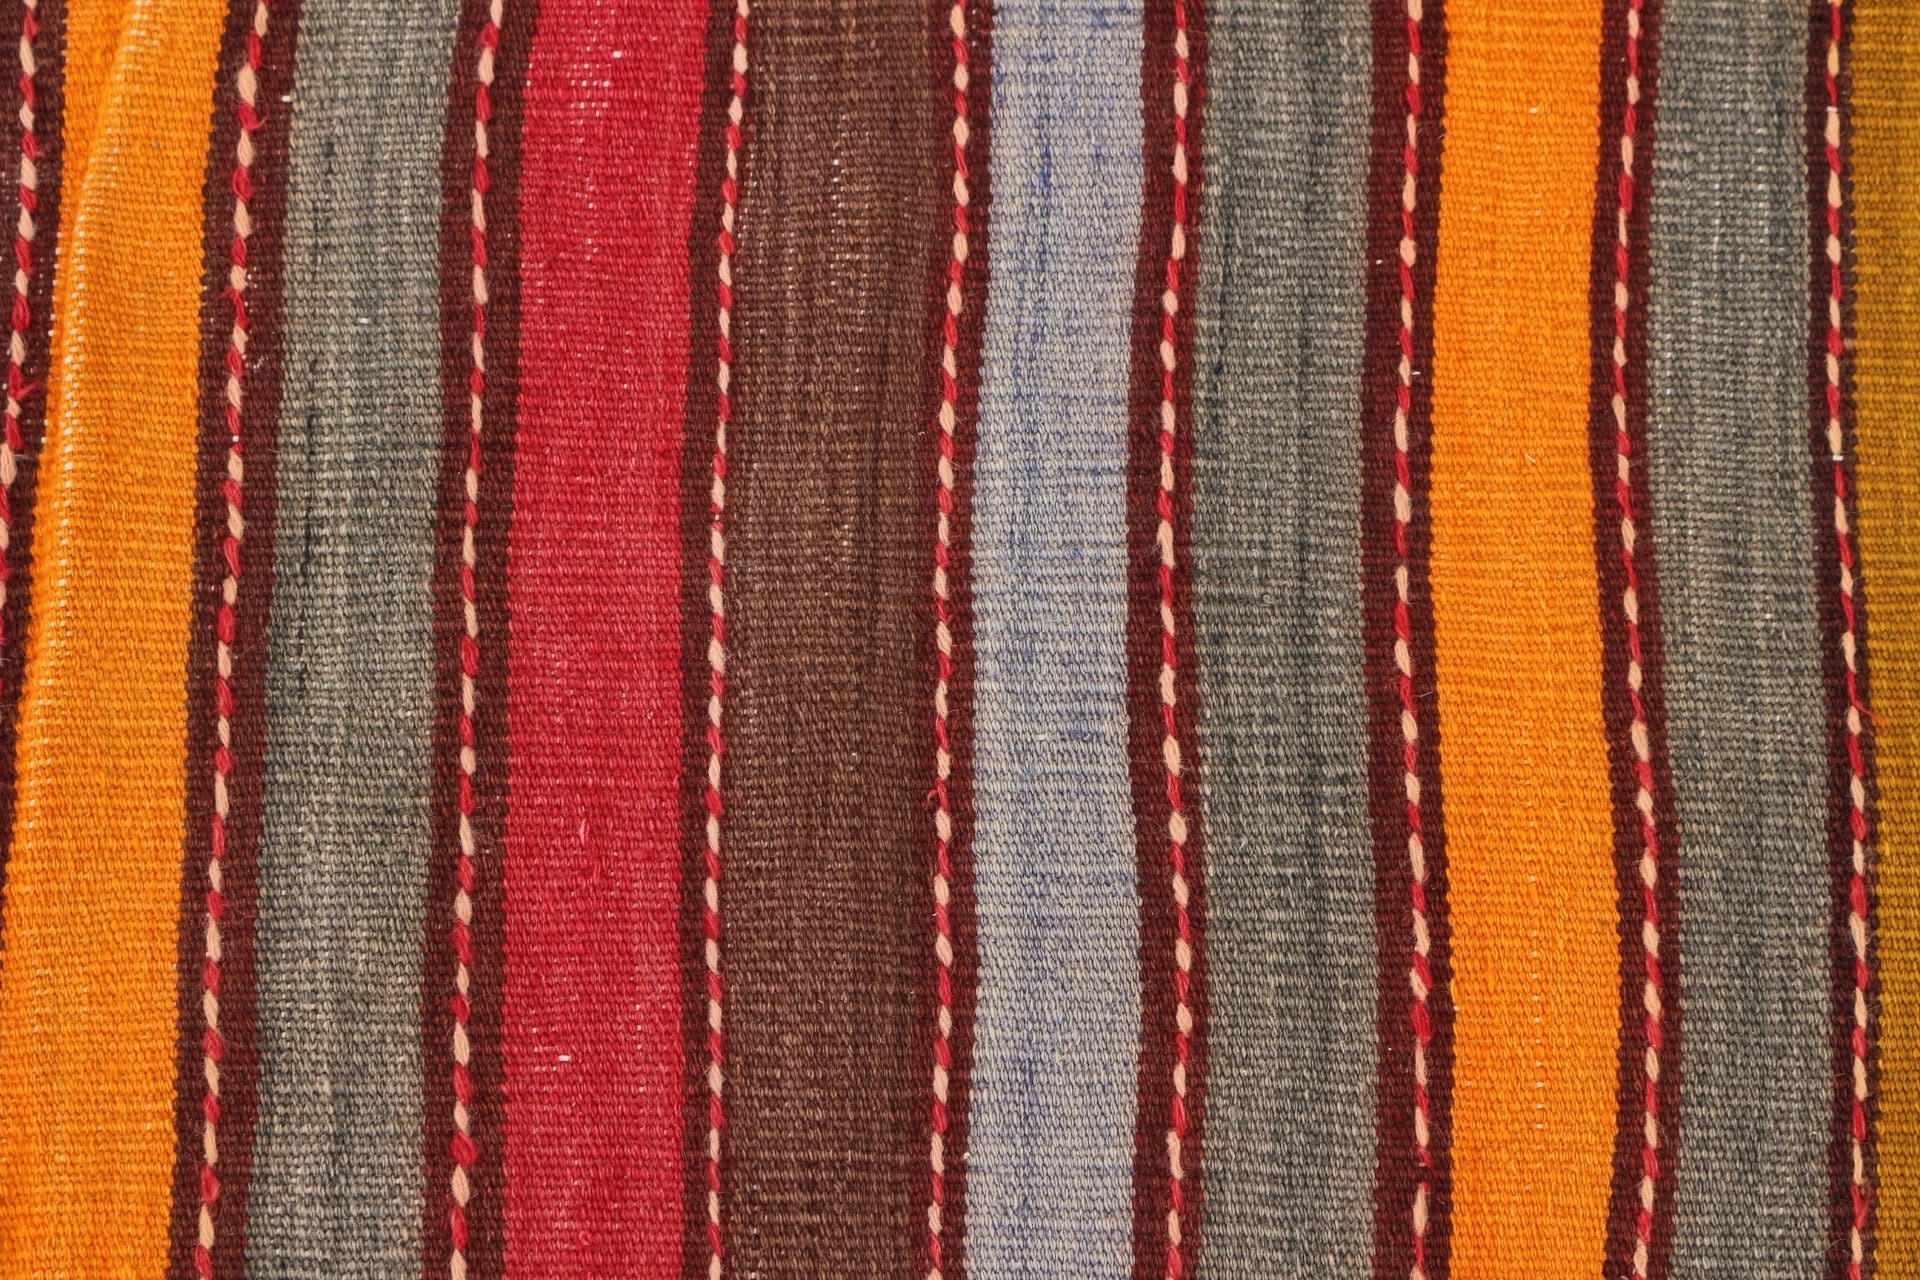 Red Antique Rug, Turkish Rugs, Stair Rugs, Corridor Rug, Oushak Rugs, Kilim, Ethnic Rug, Vintage Rugs, Bedroom Rugs, 4.1x10.3 ft Runner Rug